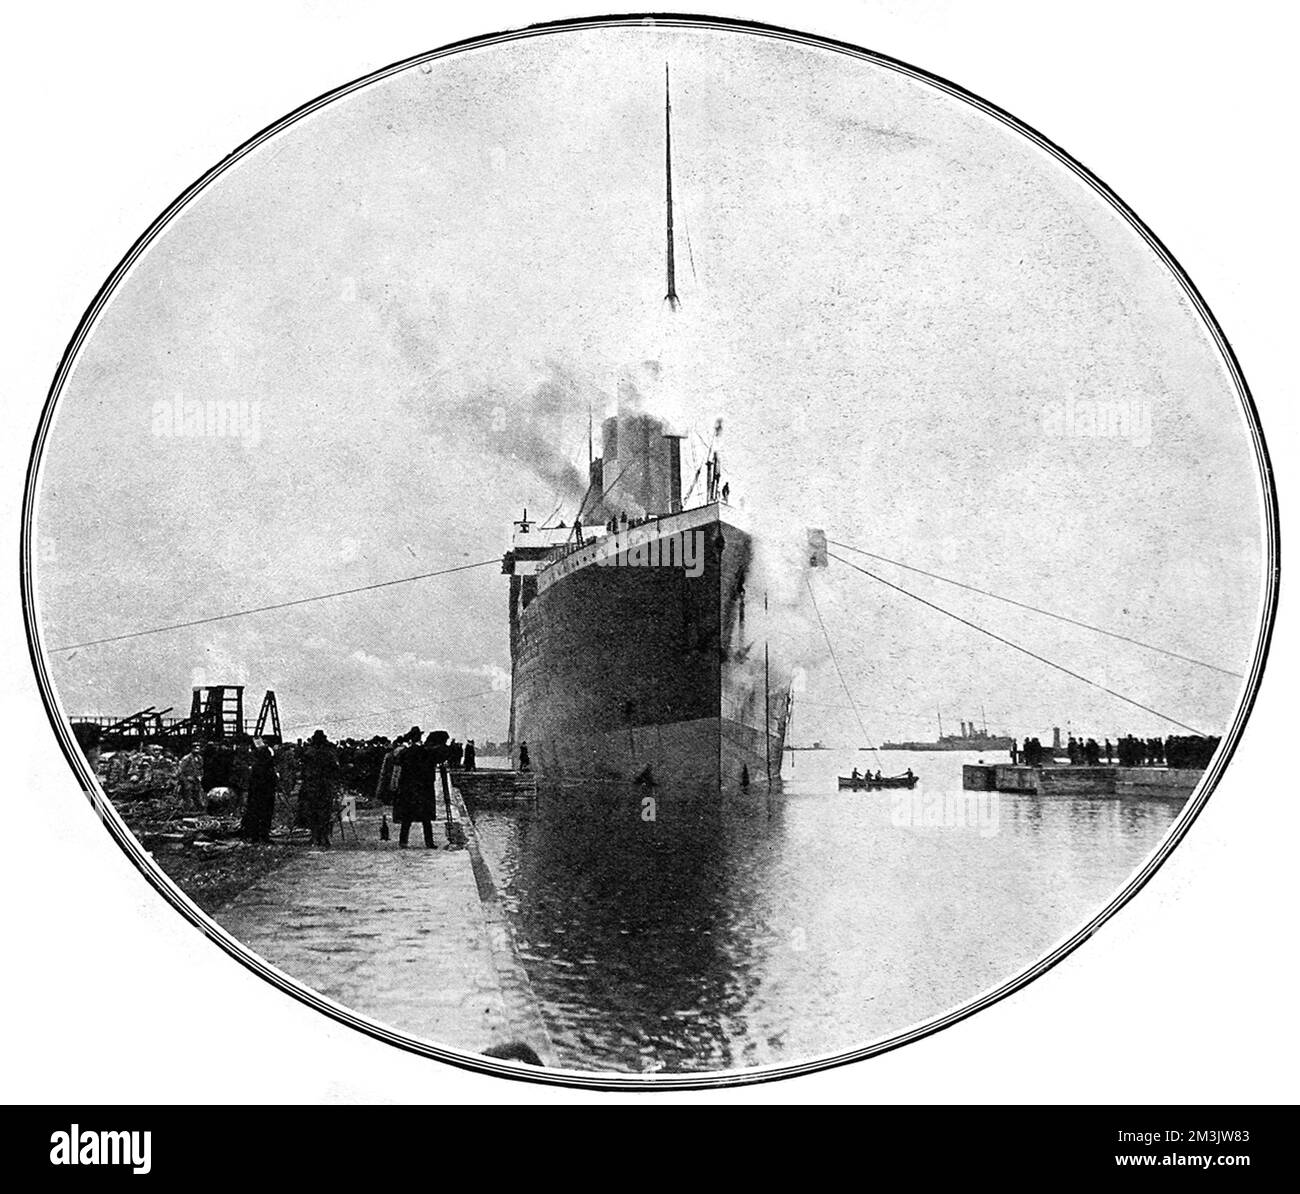 White Star Liner RMS „Olympic“, betreten das Graving Dock Musgrove, Belfast, April 1911. Dies war das erste Mal, dass das größte Schiff der Welt das größte Gravurdock der Welt betrat, das zwischen 1904 und 1911 gebaut wurde. „Olympic“ wurde 1910 von Harland und Wolff, Belfast, gestartet und wurde mit einer Länge von 882 Fuß und einem Gewicht von 45.000 Tonnen zum größten Schiff, das damals über Wasser flog. Sie wurde von 1911 bis 1914 auf dem Atlantikdienst zwischen Großbritannien und Nordamerika operiert. Nach der Katastrophe der Titanic schickte White Star Line „Olympic“ nach Harland und Wolff, um Änderungen vorzunehmen - größere wasserdichte Türen und Stockfoto